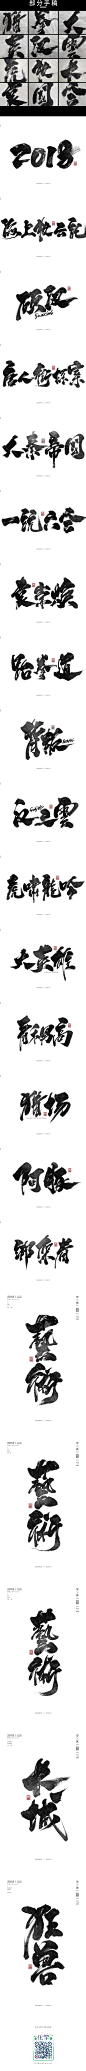 2018~书法字体来一发！-字体传奇网-中国首个字体品牌设计师交流网 _Z【字体设计】_T2021816